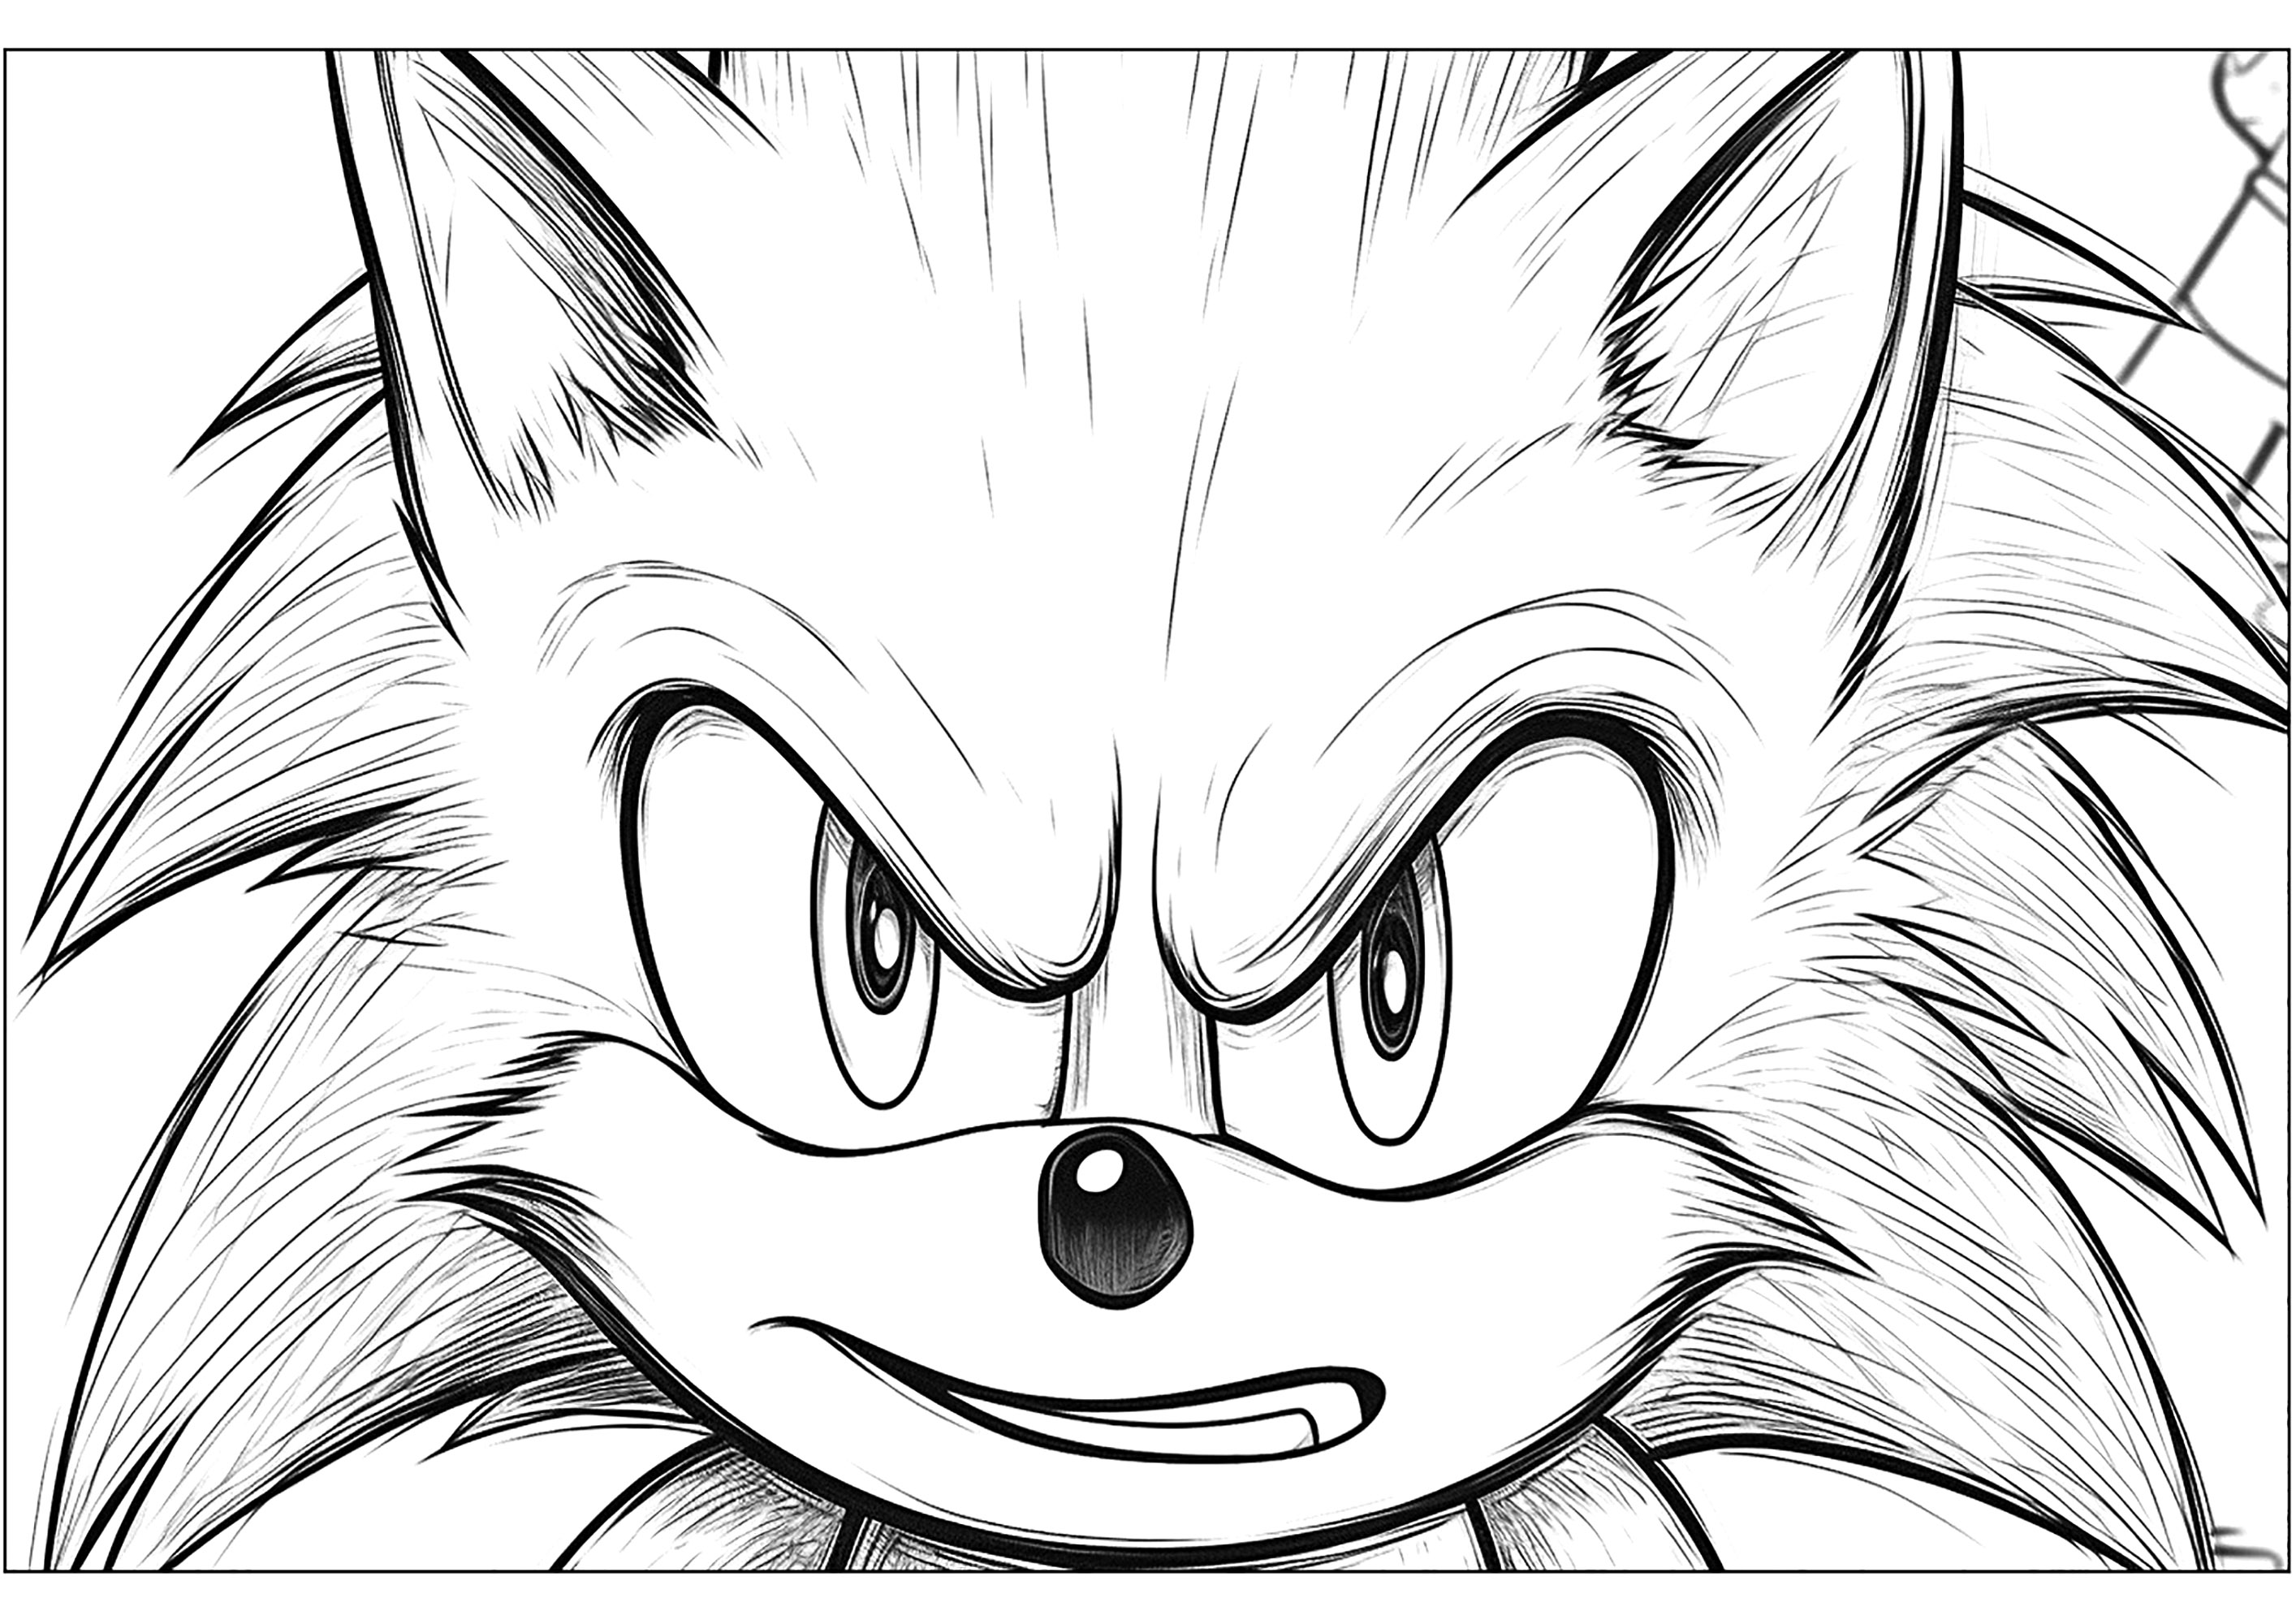 Vista frontal de Sonic